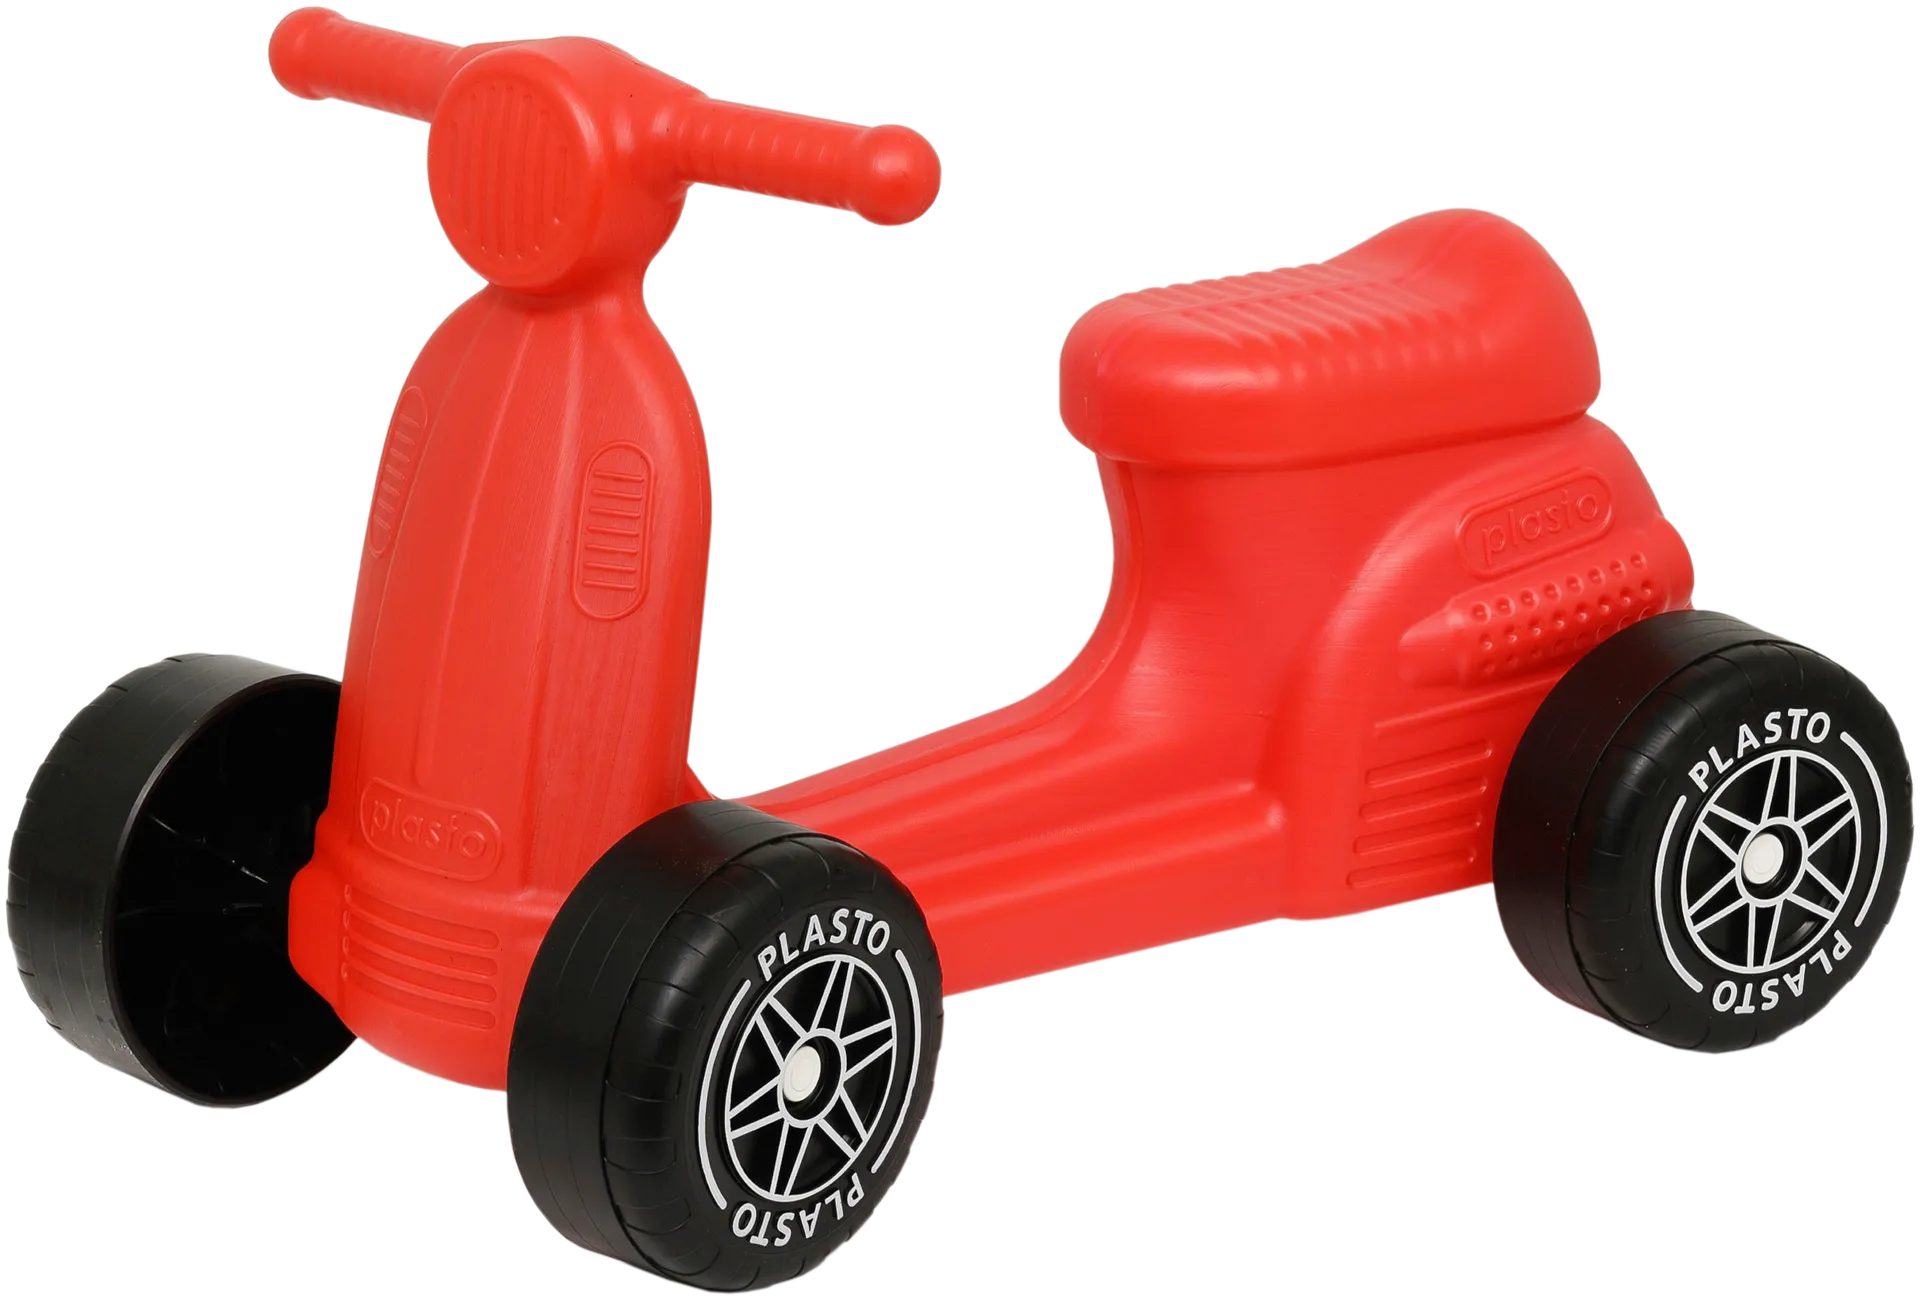 Plasto skootteri punainen hiljaiset renkaat, istuinkorkeus 22 cm